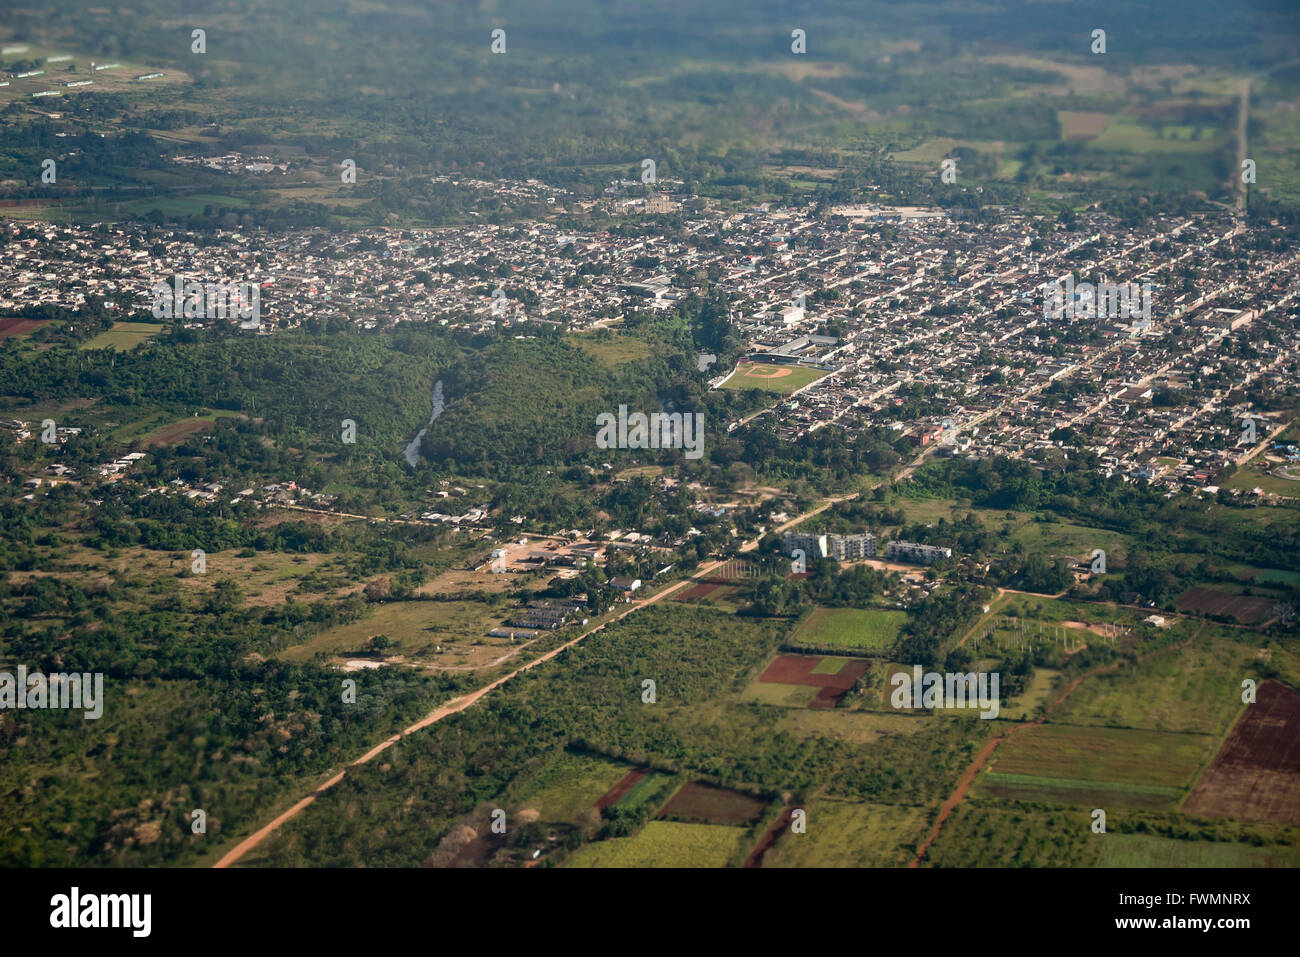 Horizontal vista aérea de San Antonio de los baños en las afueras de La Habana y sus alrededores en Cuba. Foto de stock